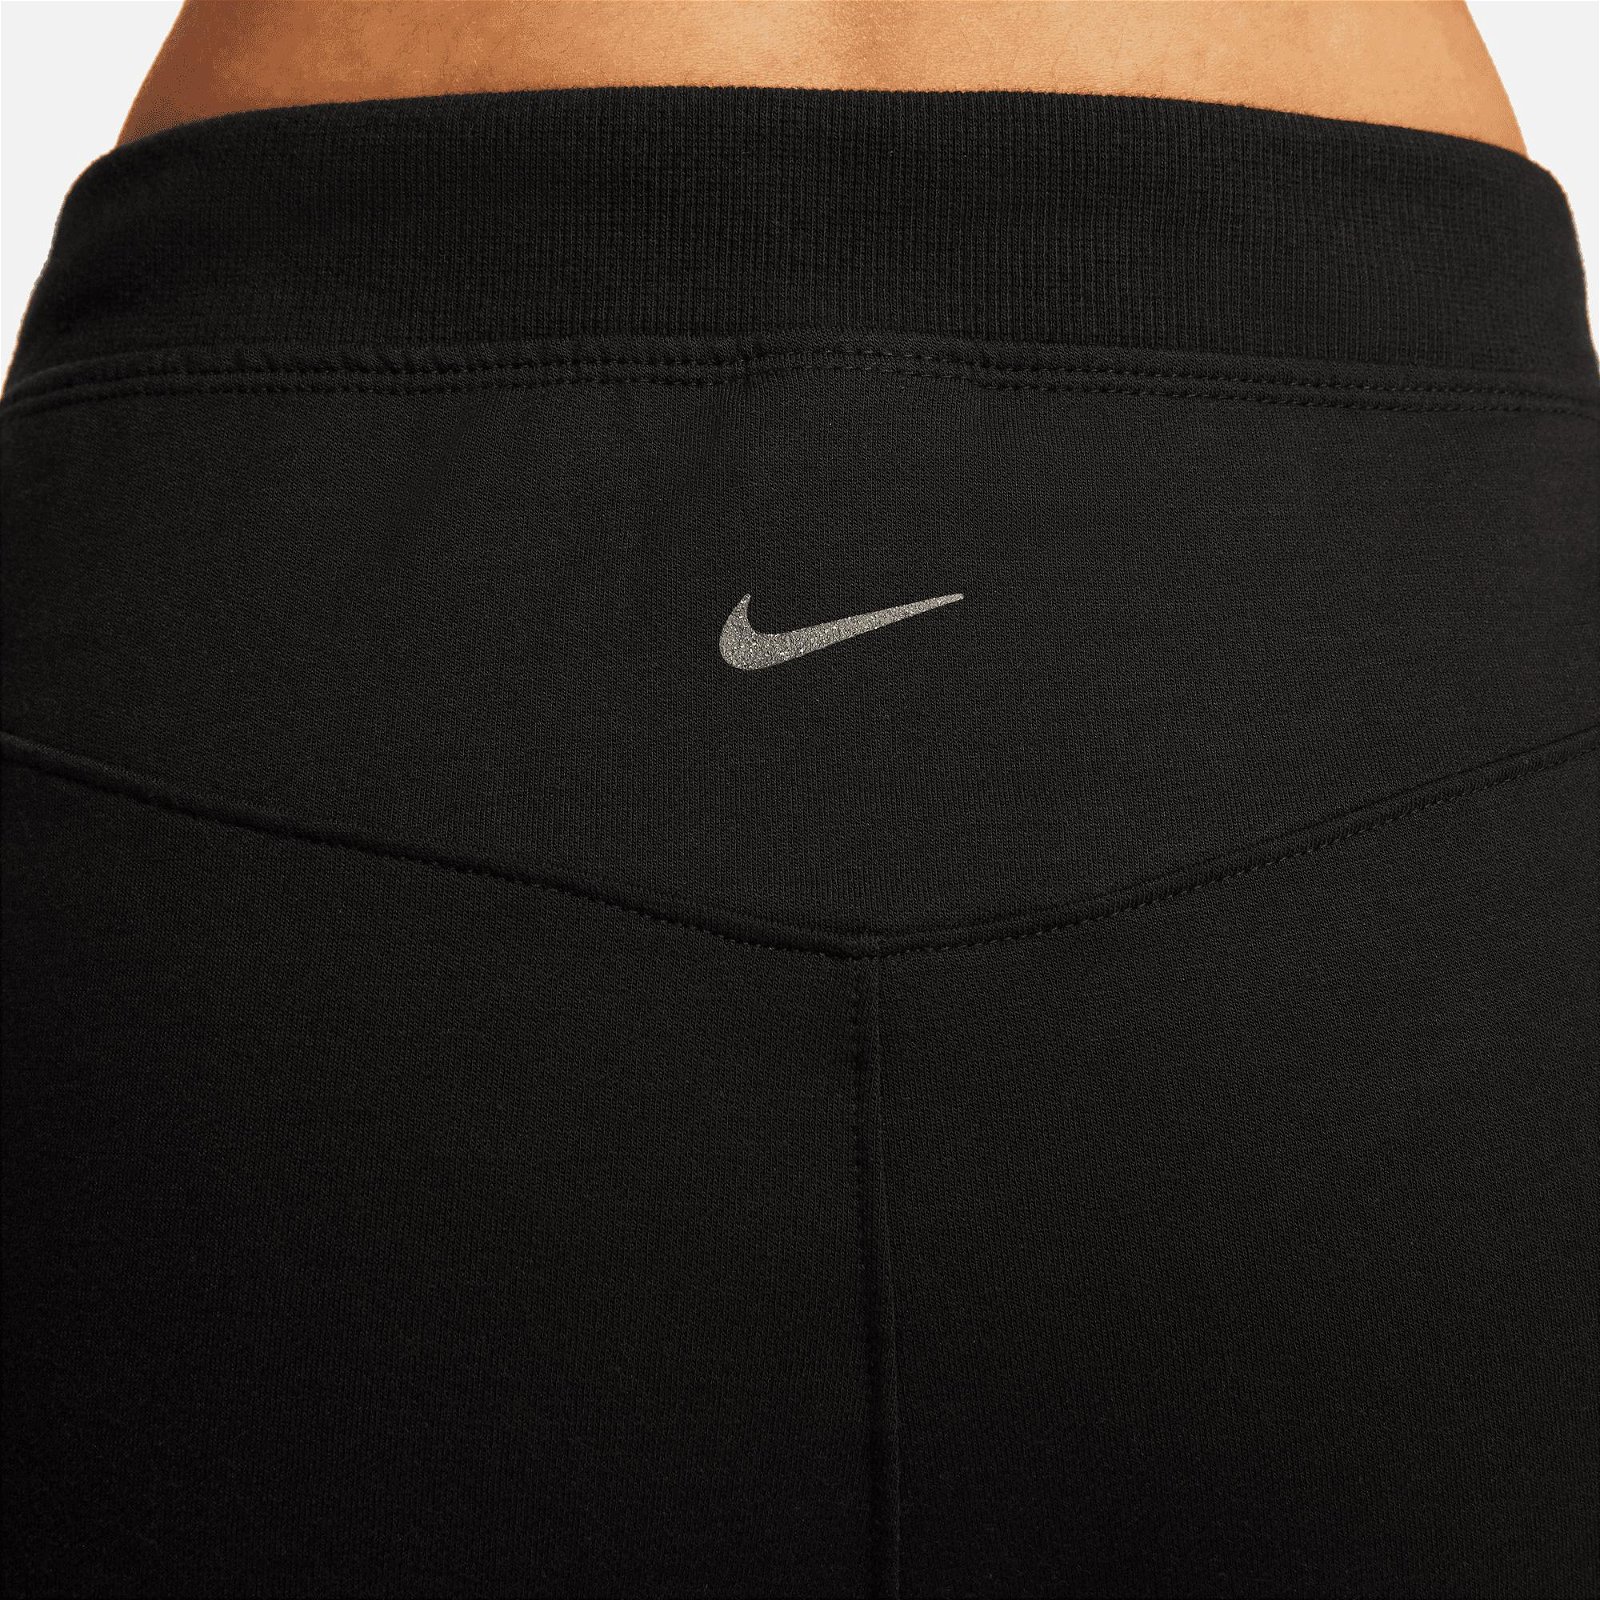 Nike Ny Luxe Fleece Jogger 7/8 Kadın Siyah Eşofman Altı